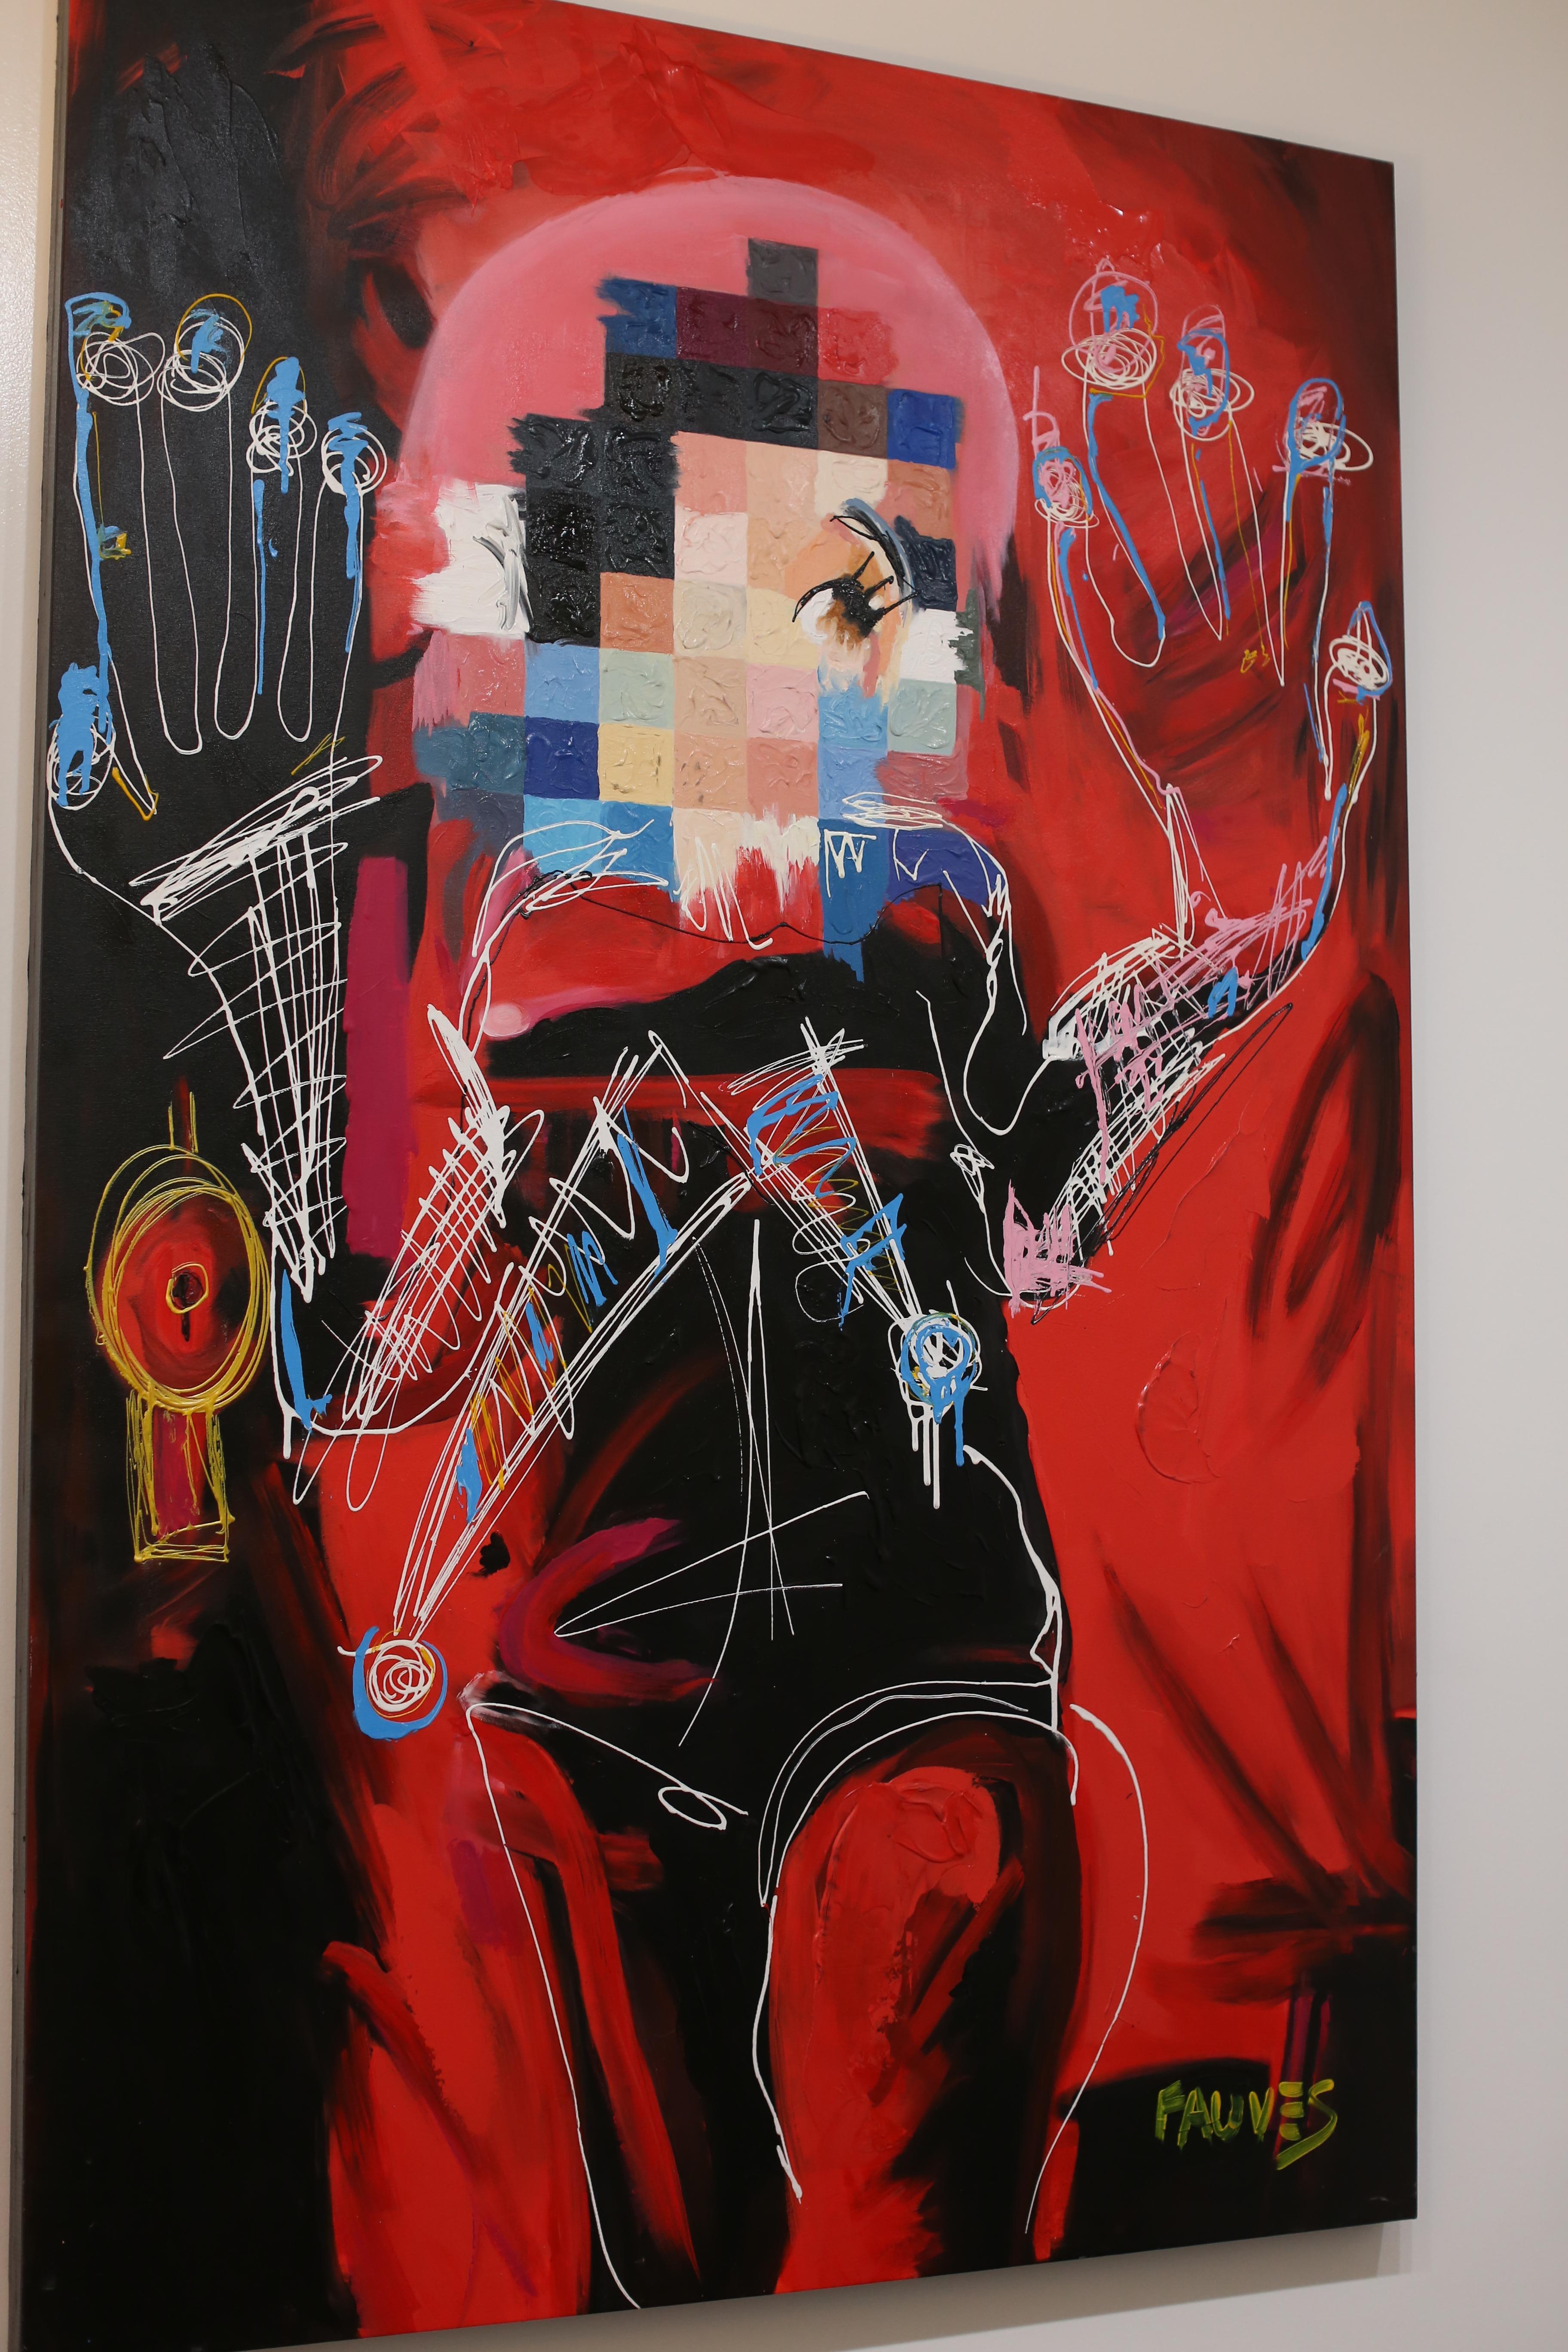 „Snow Red““, Gemälde in Mischtechnik, 78x52 Zoll, von John Paul Fauves  2